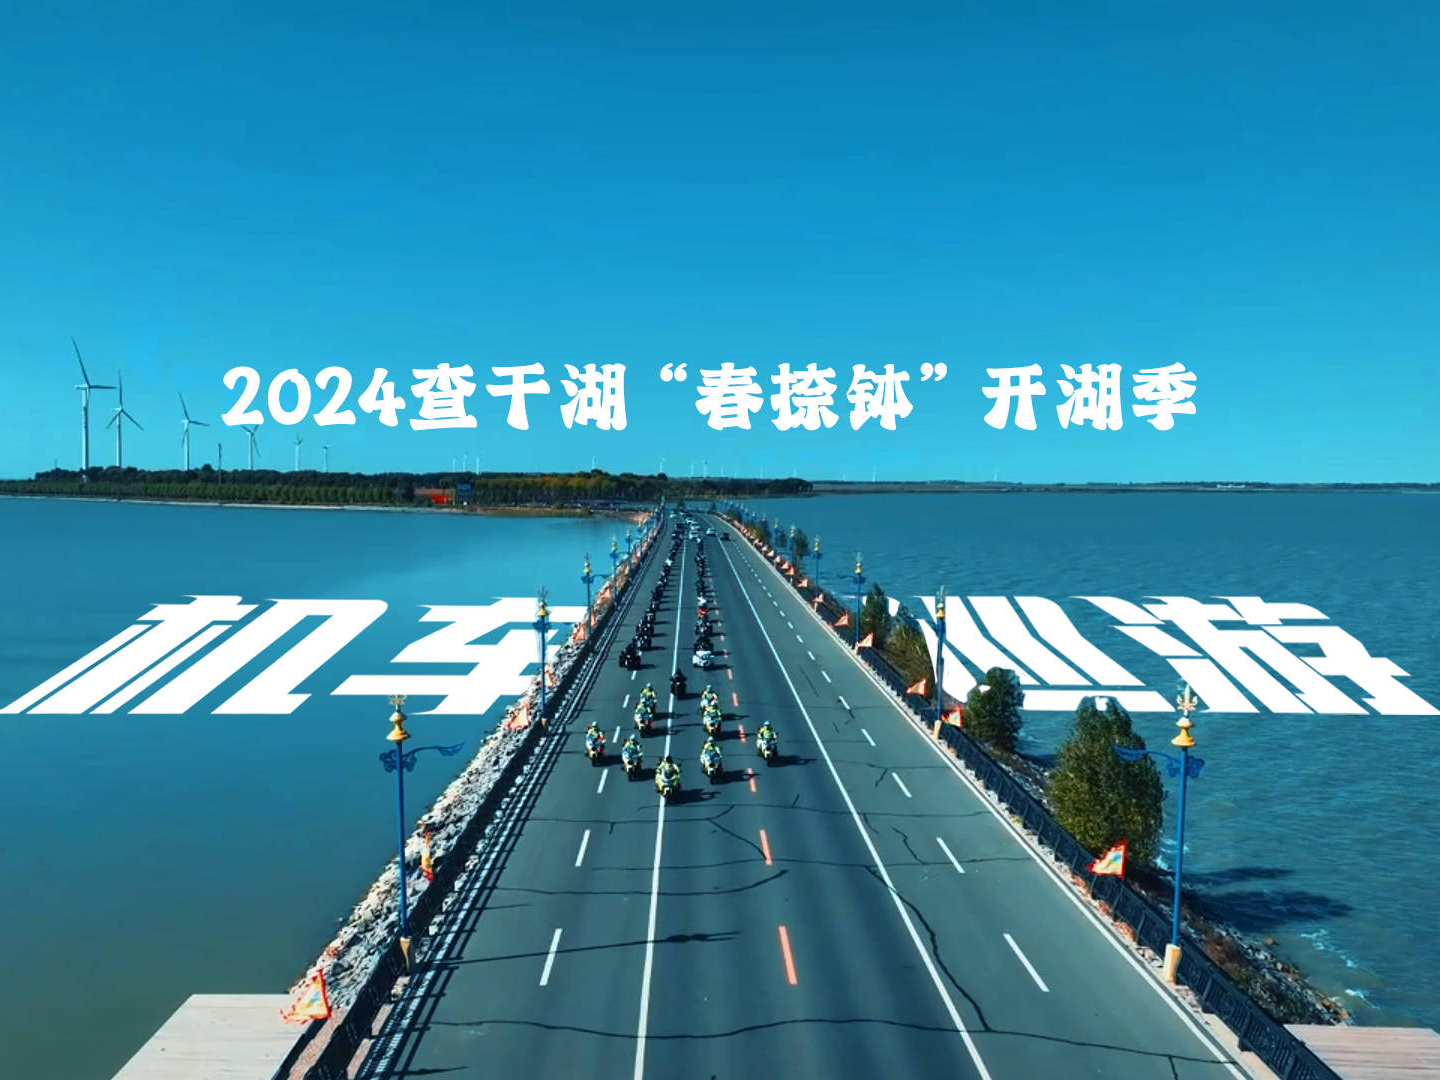 2024查干湖“春捺钵·开湖季”系列 机车巡游预告